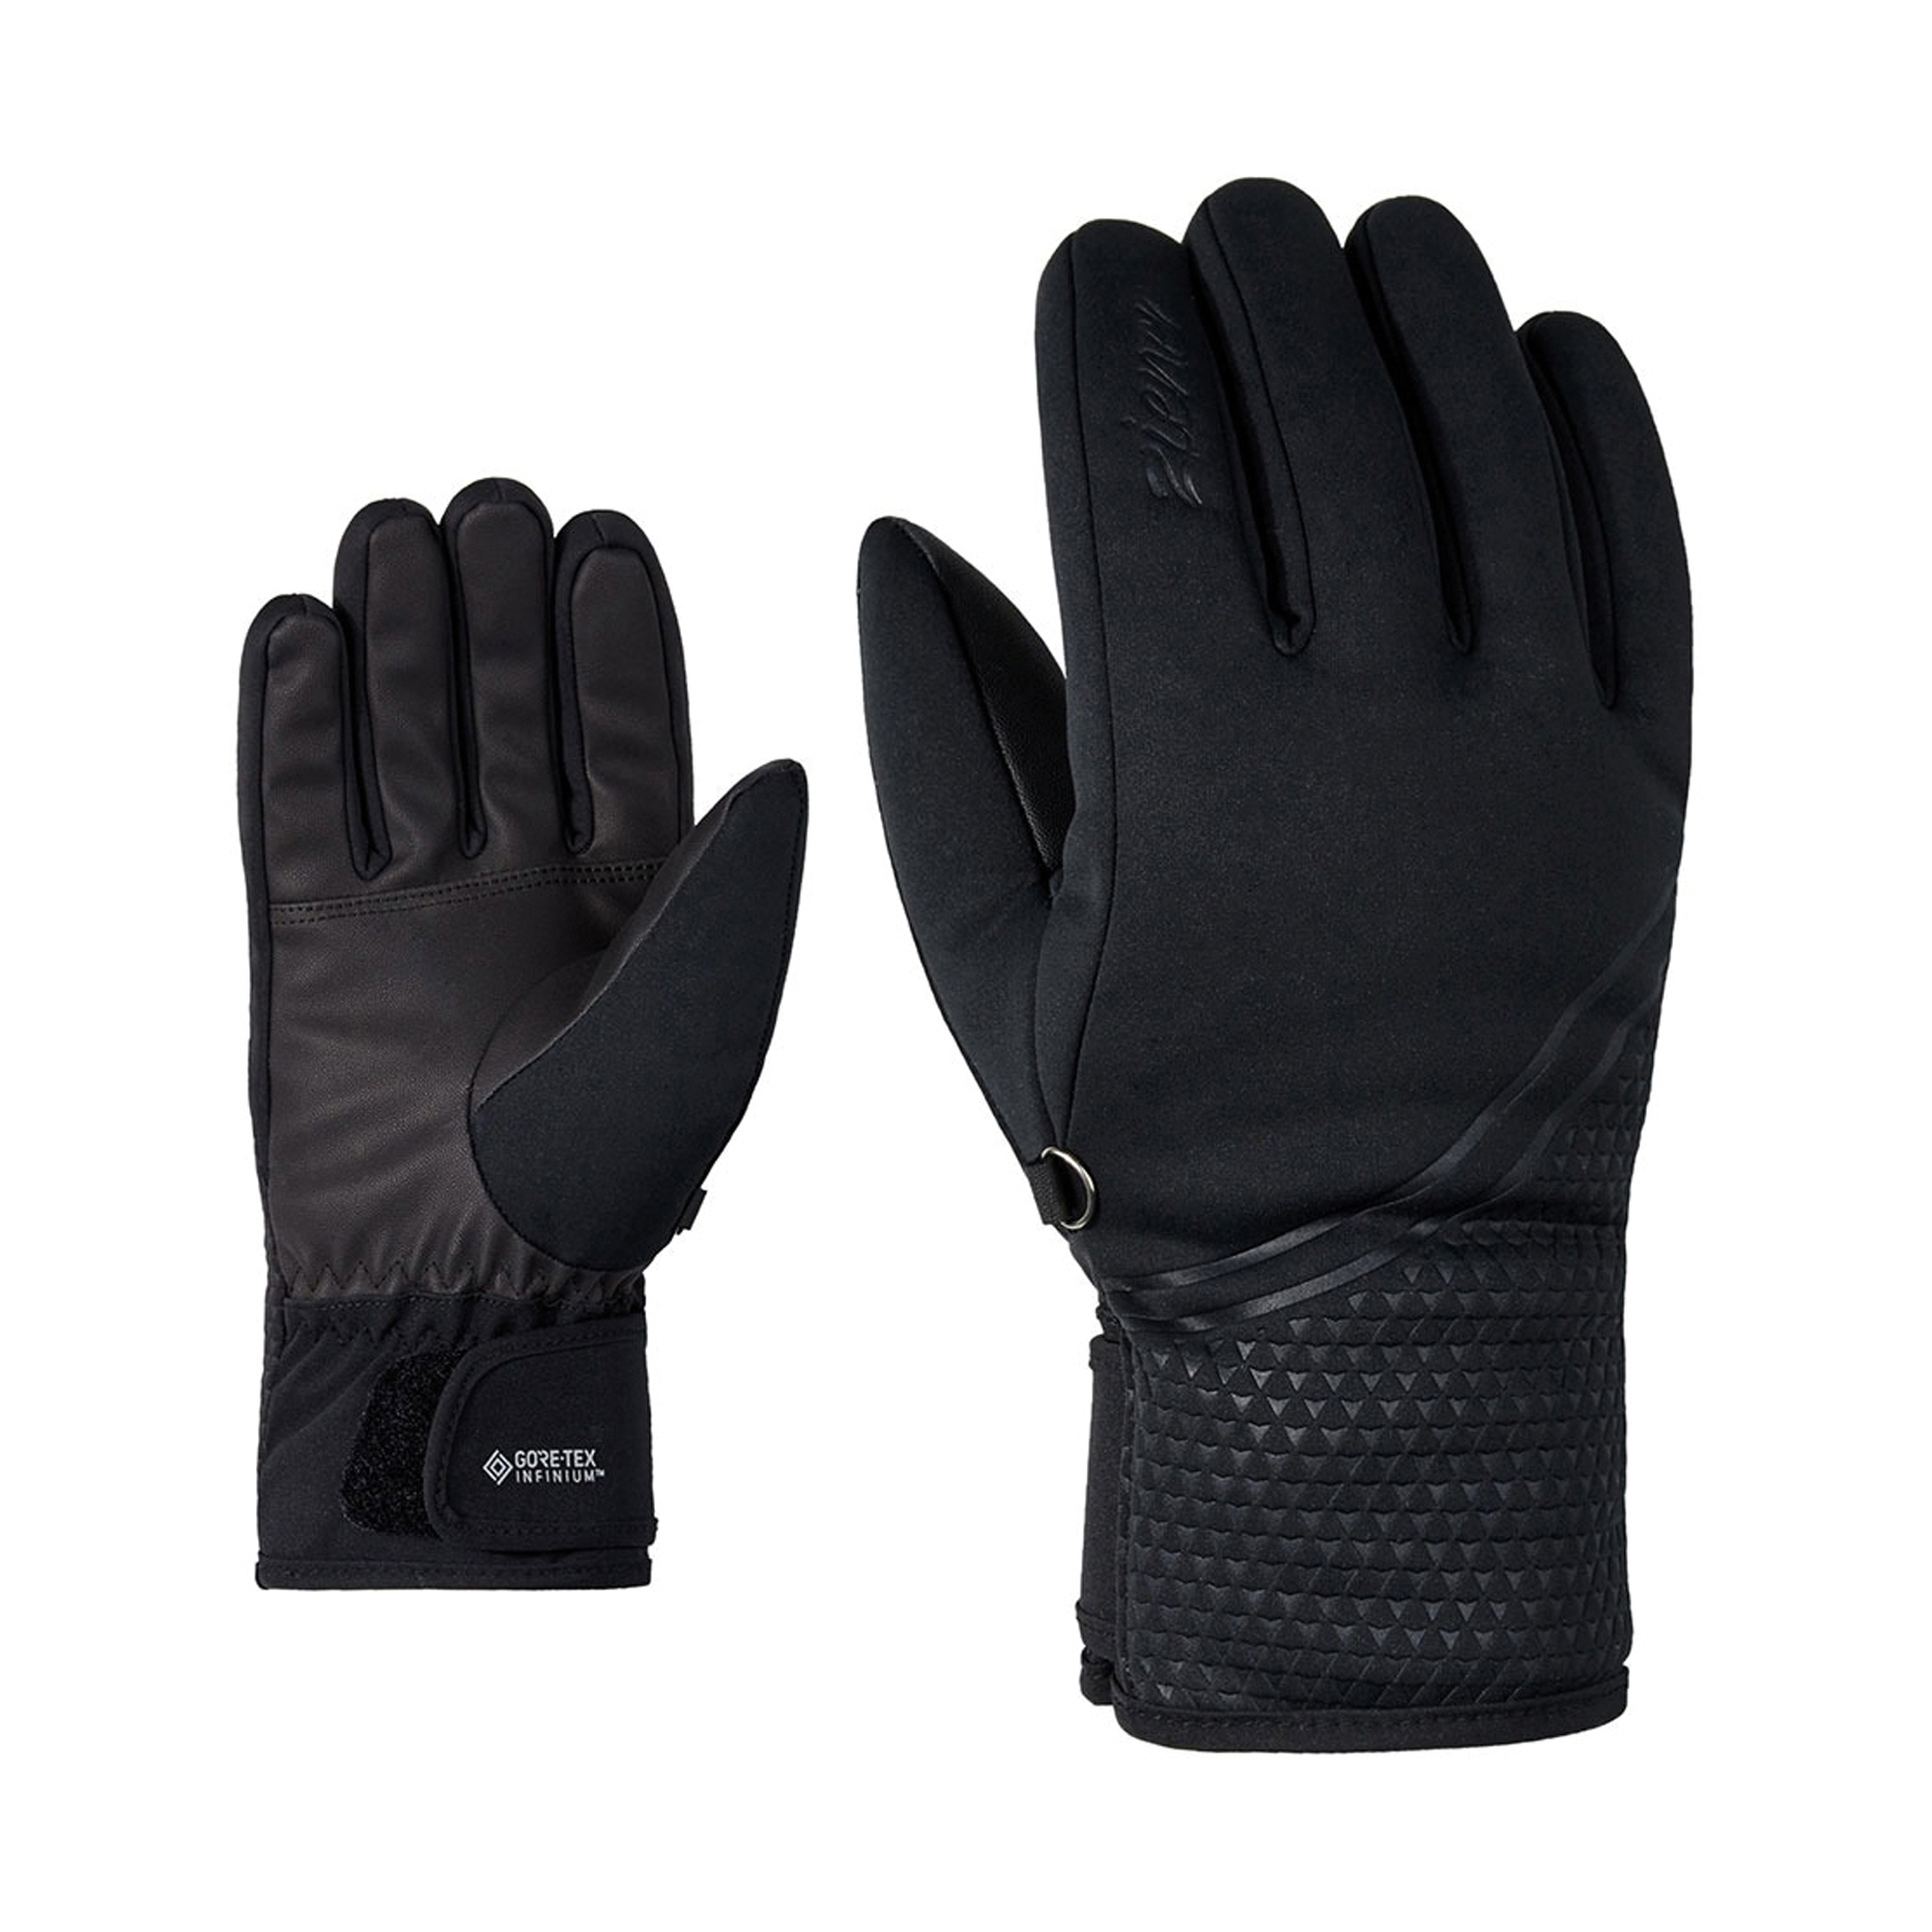 Ziener Kanta GTX Inf Ski Handschoenen Dames online kopen